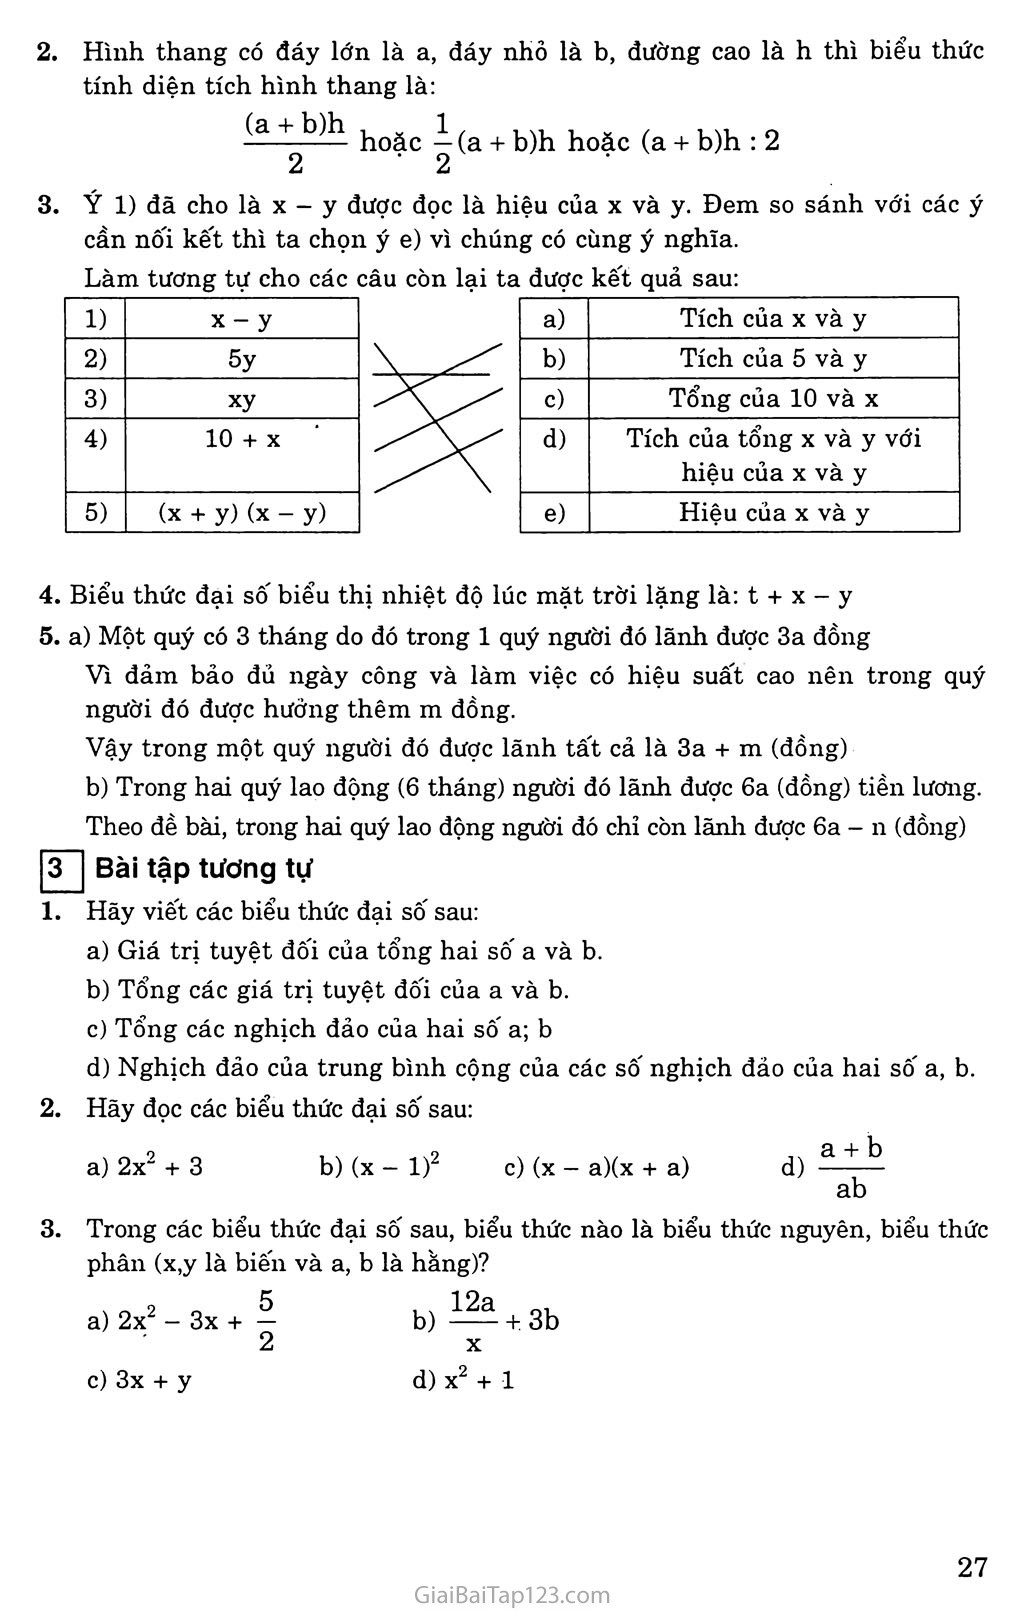 Bài 1. Khái niệm về biểu thức đại số trang 3